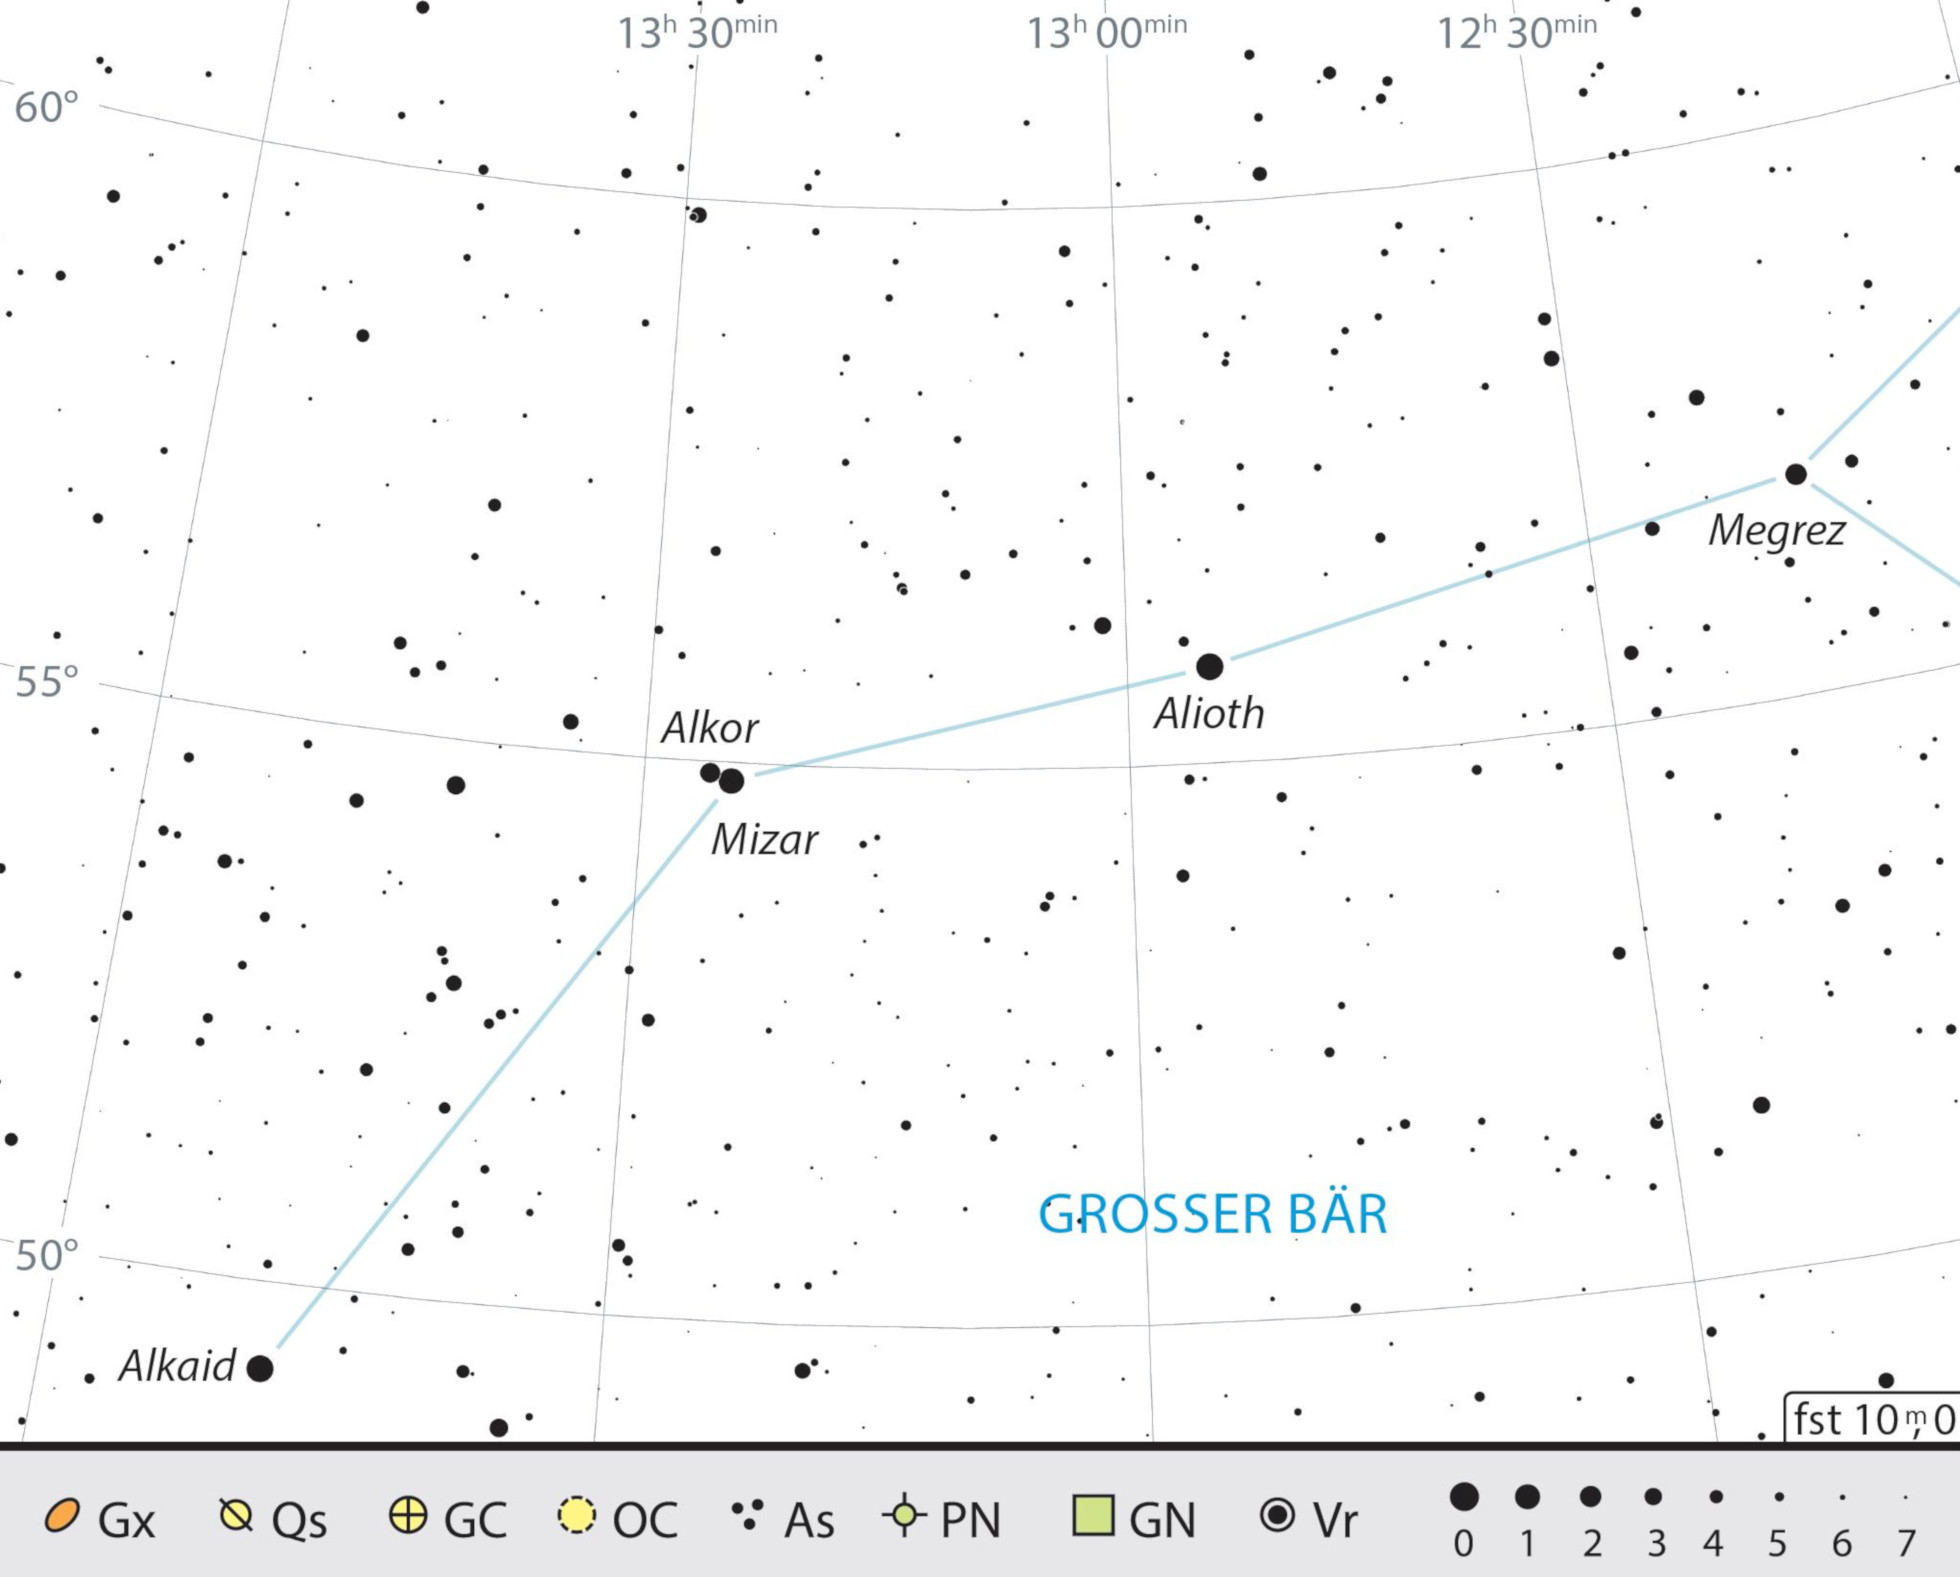 Mapa de localização de Mizar e Alcor na Ursa Maior. J. Scholten 